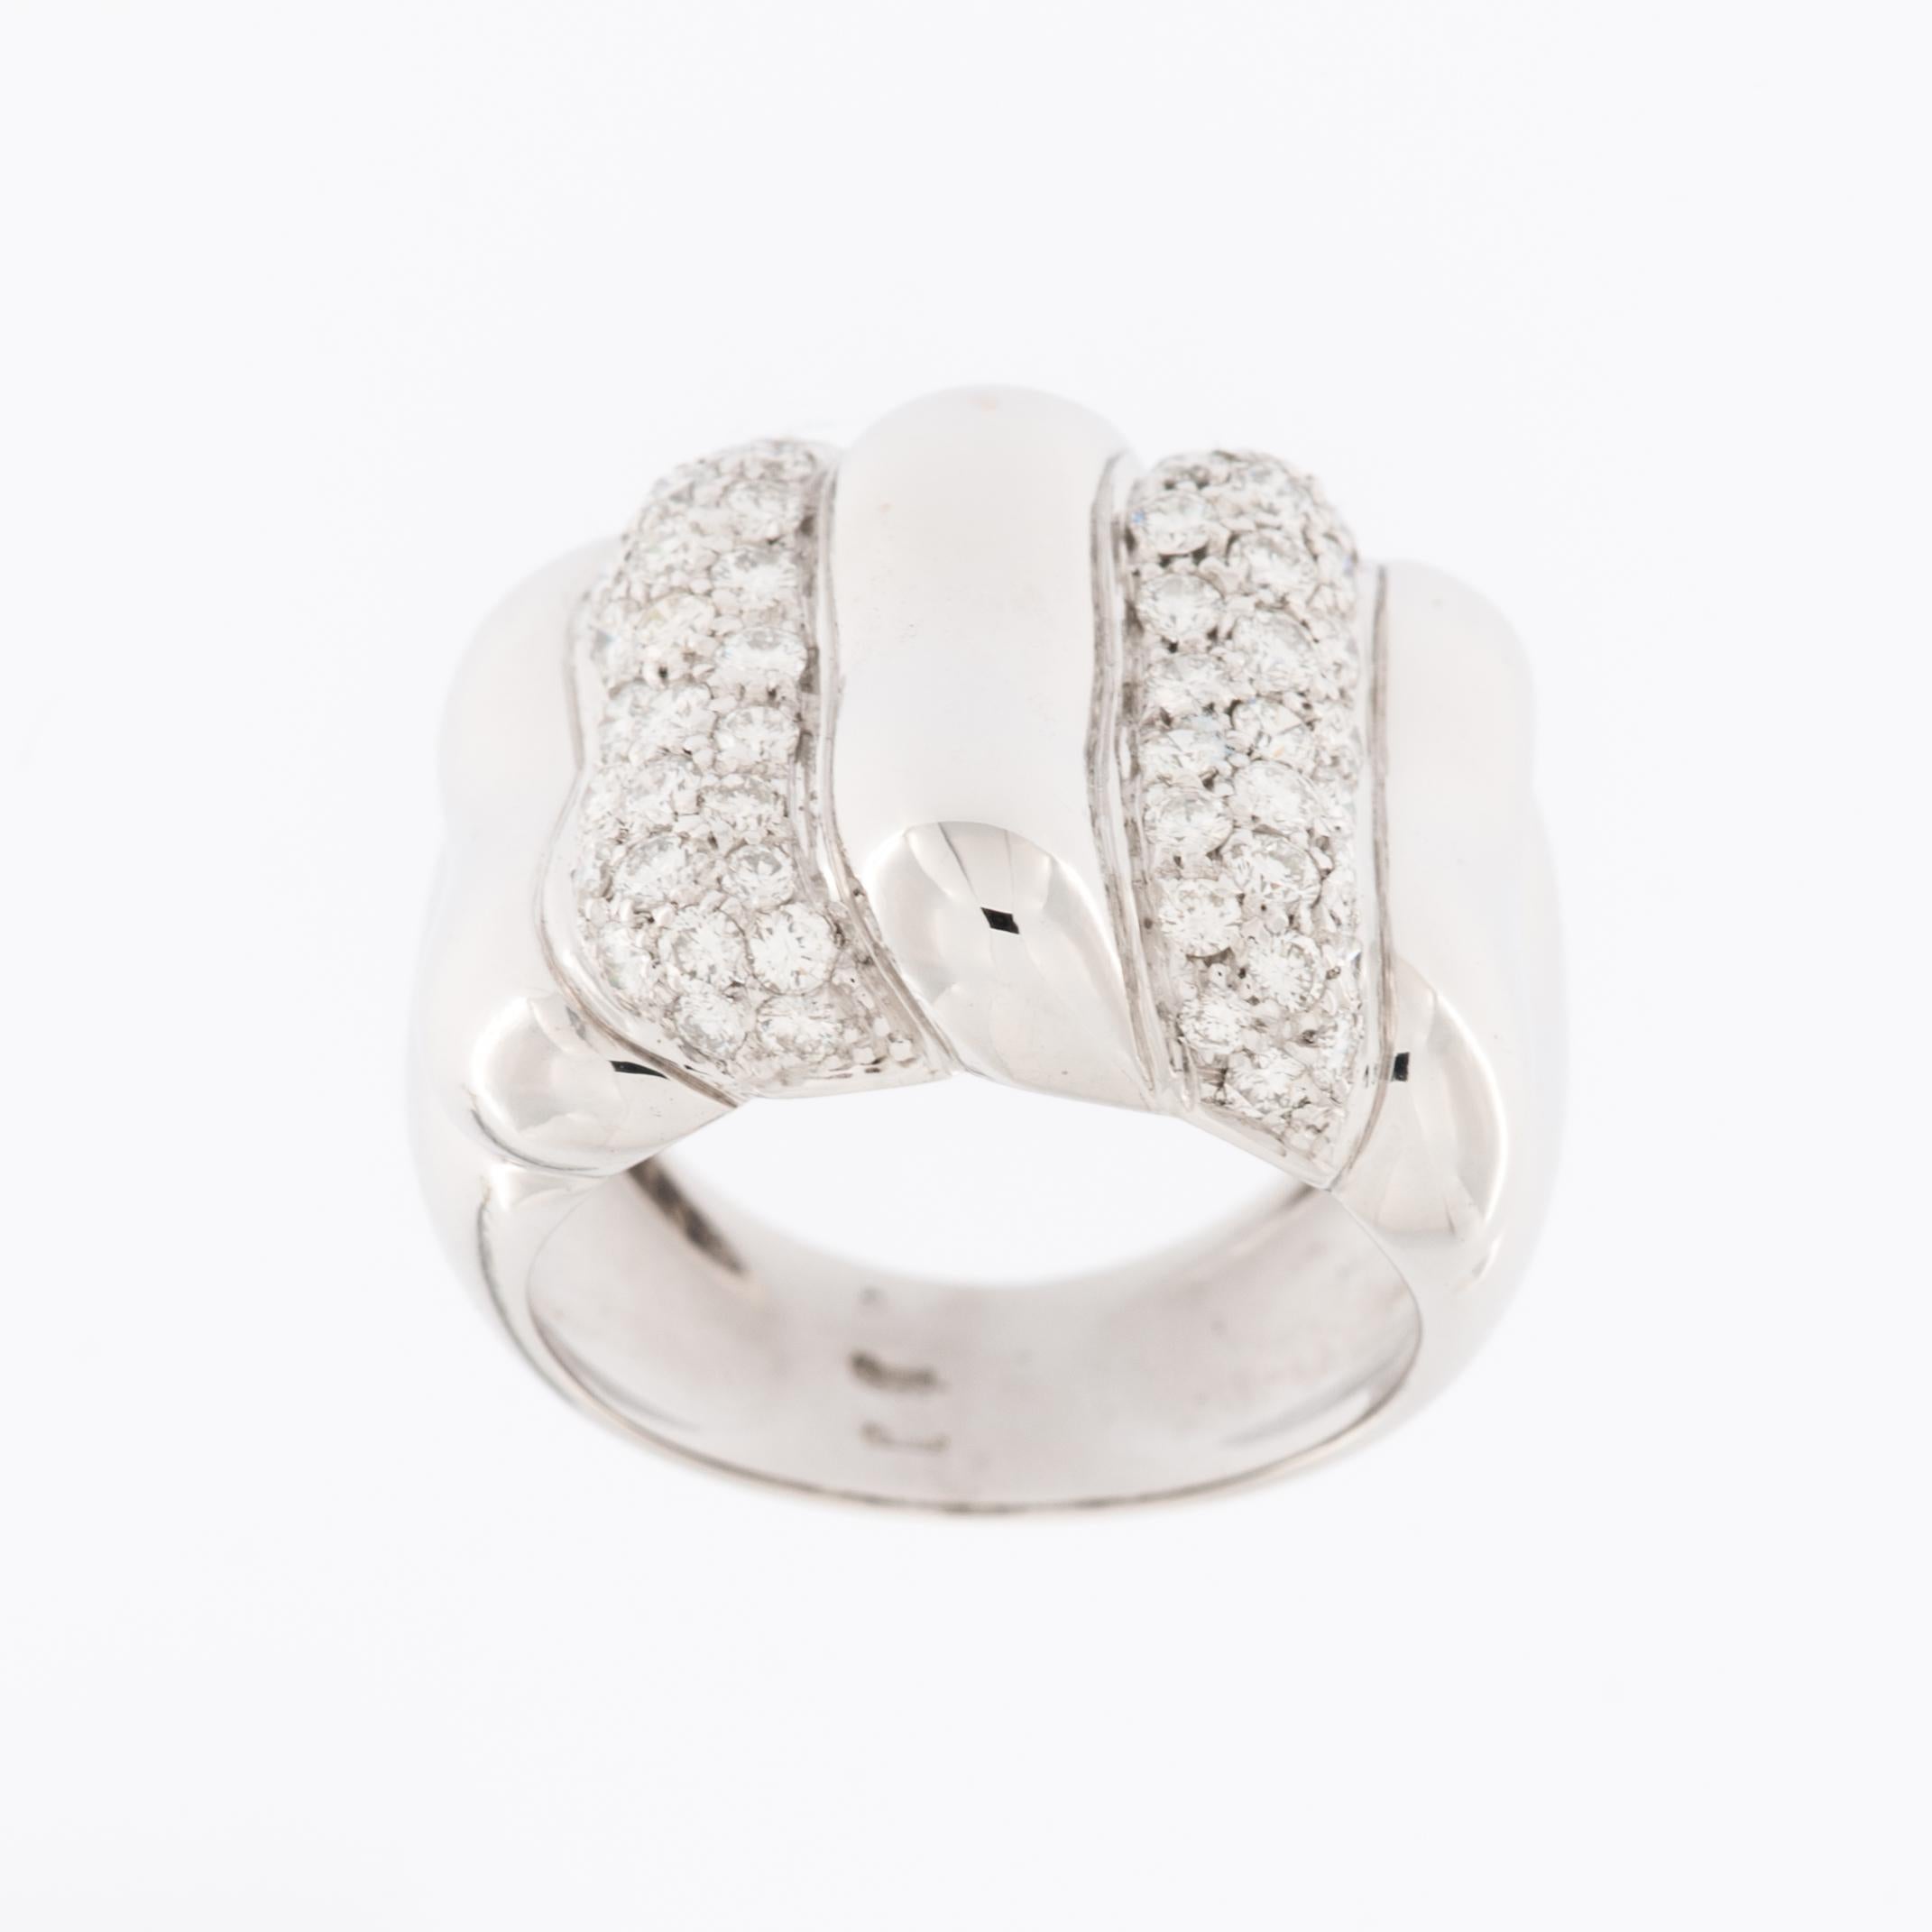 Der moderne italienische Ring aus 18-karätigem Weißgold mit Diamanten in Reliefarbeit ist ein atemberaubendes Schmuckstück, das zeitgenössisches Design mit luxuriösen Materialien verbindet. 

Dieser Ring ist aus 18 Karat Weißgold gefertigt, einem